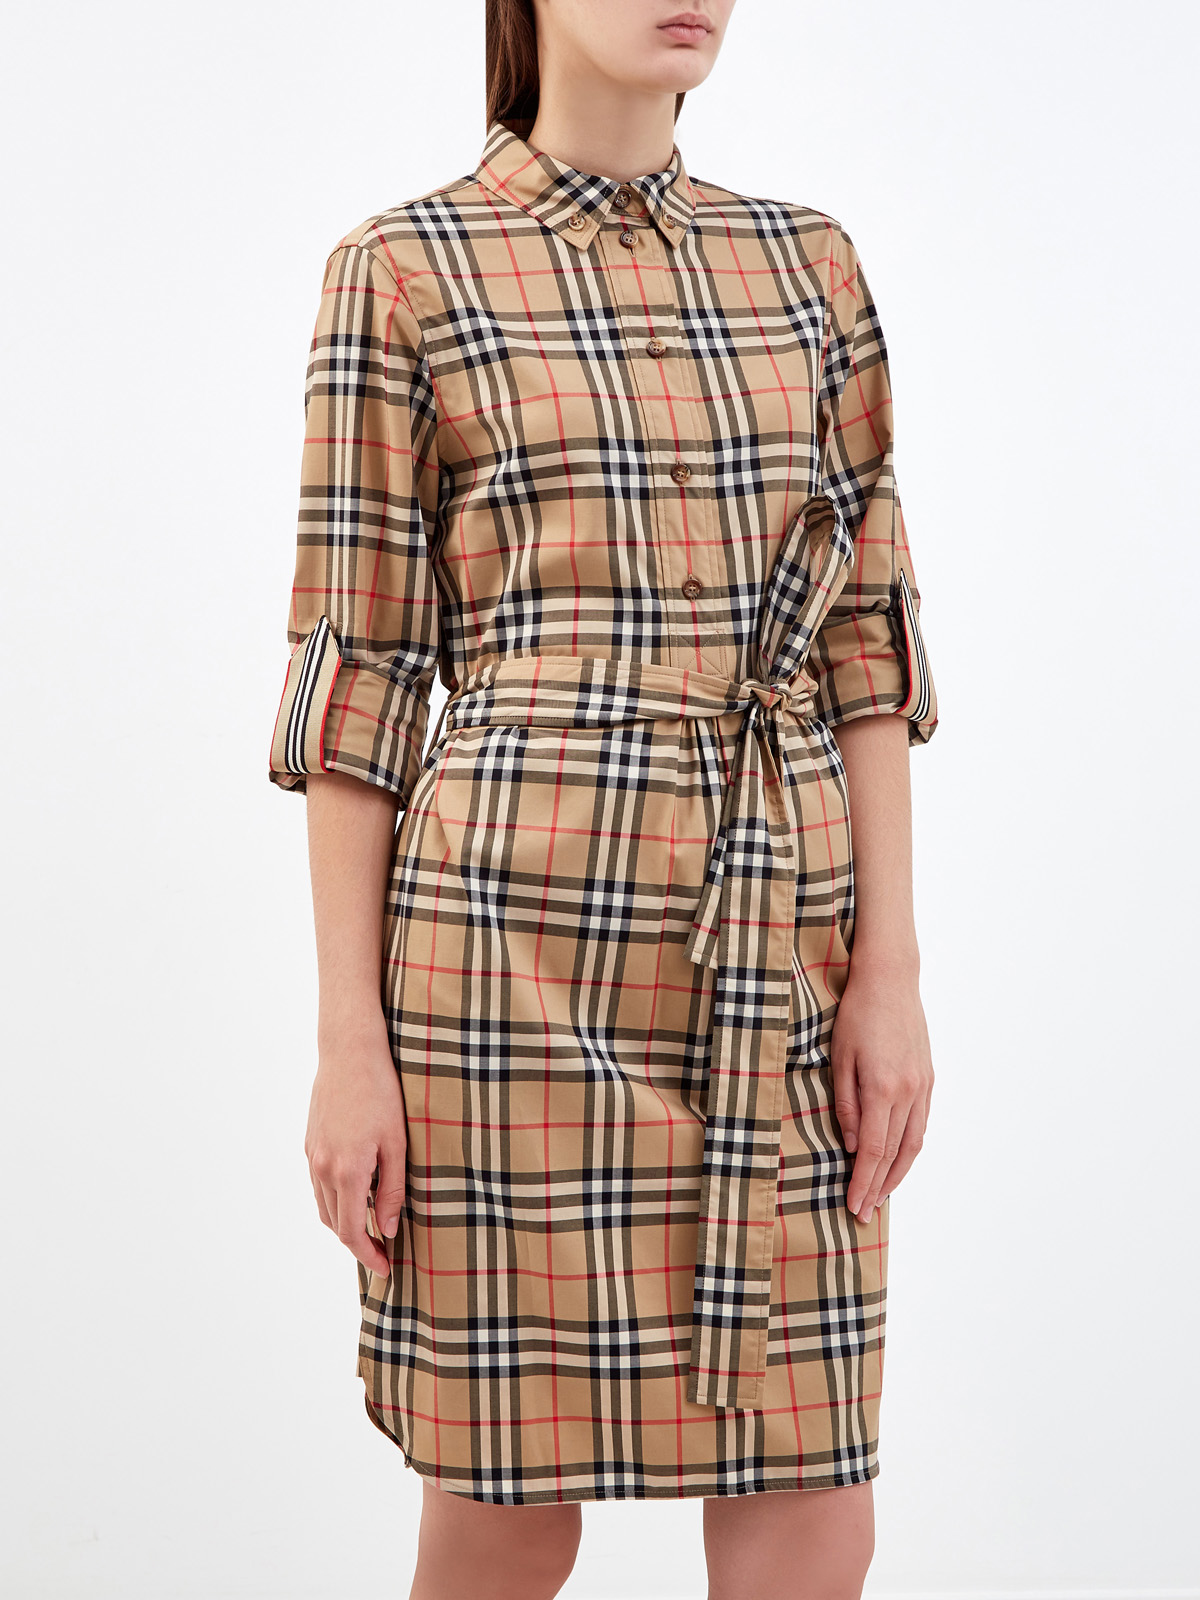 Приталенное платье-рубашка в клетку Vintage Check BURBERRY, цвет коричневый, размер S;L;XL - фото 3